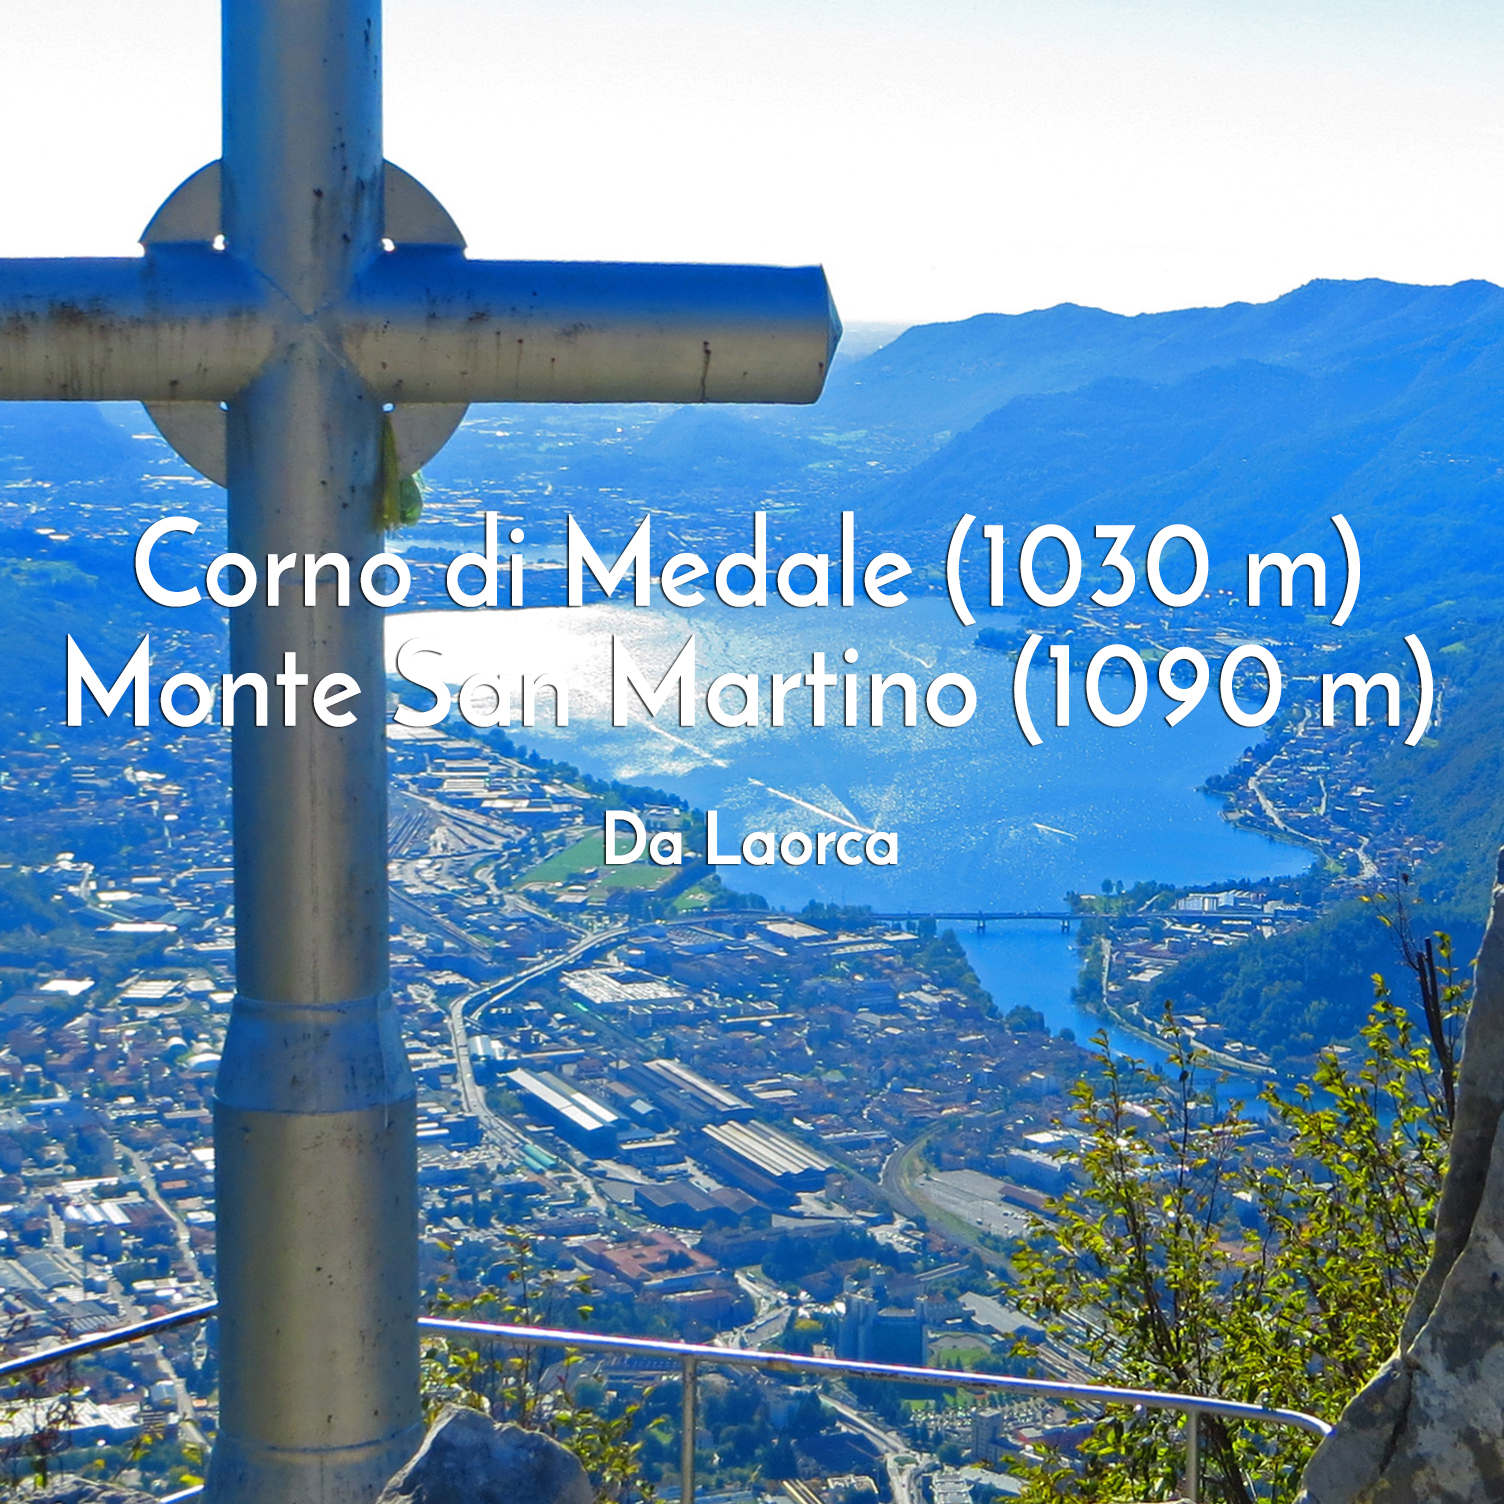 Corno di Medale Monte San Martino